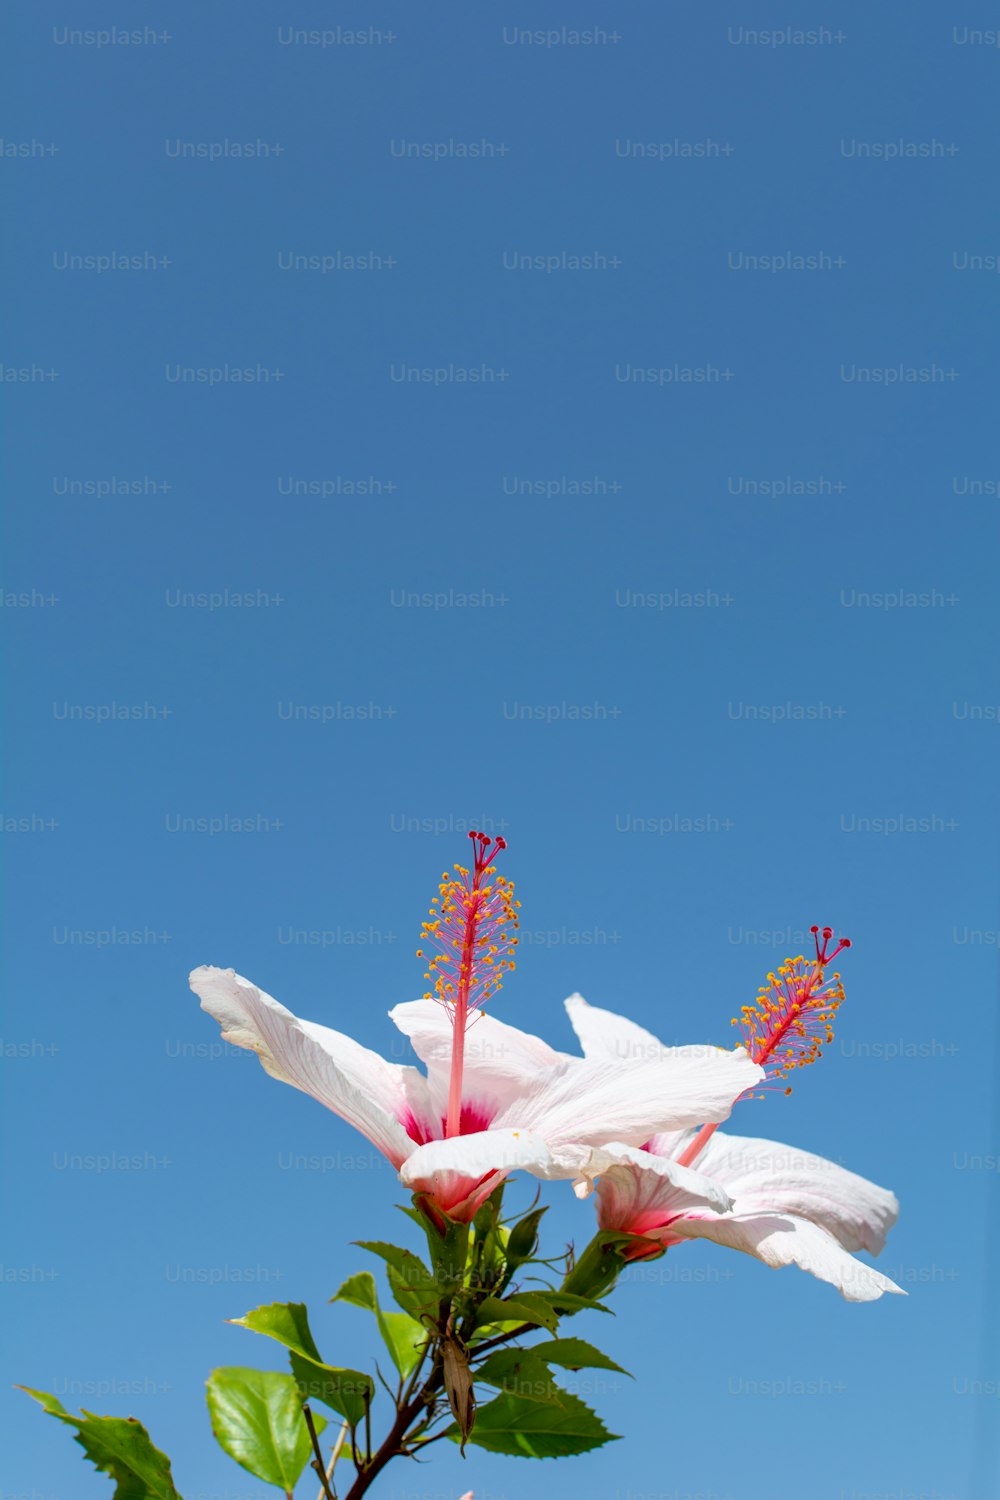 duas flores brancas com estames vermelhos contra um céu azul